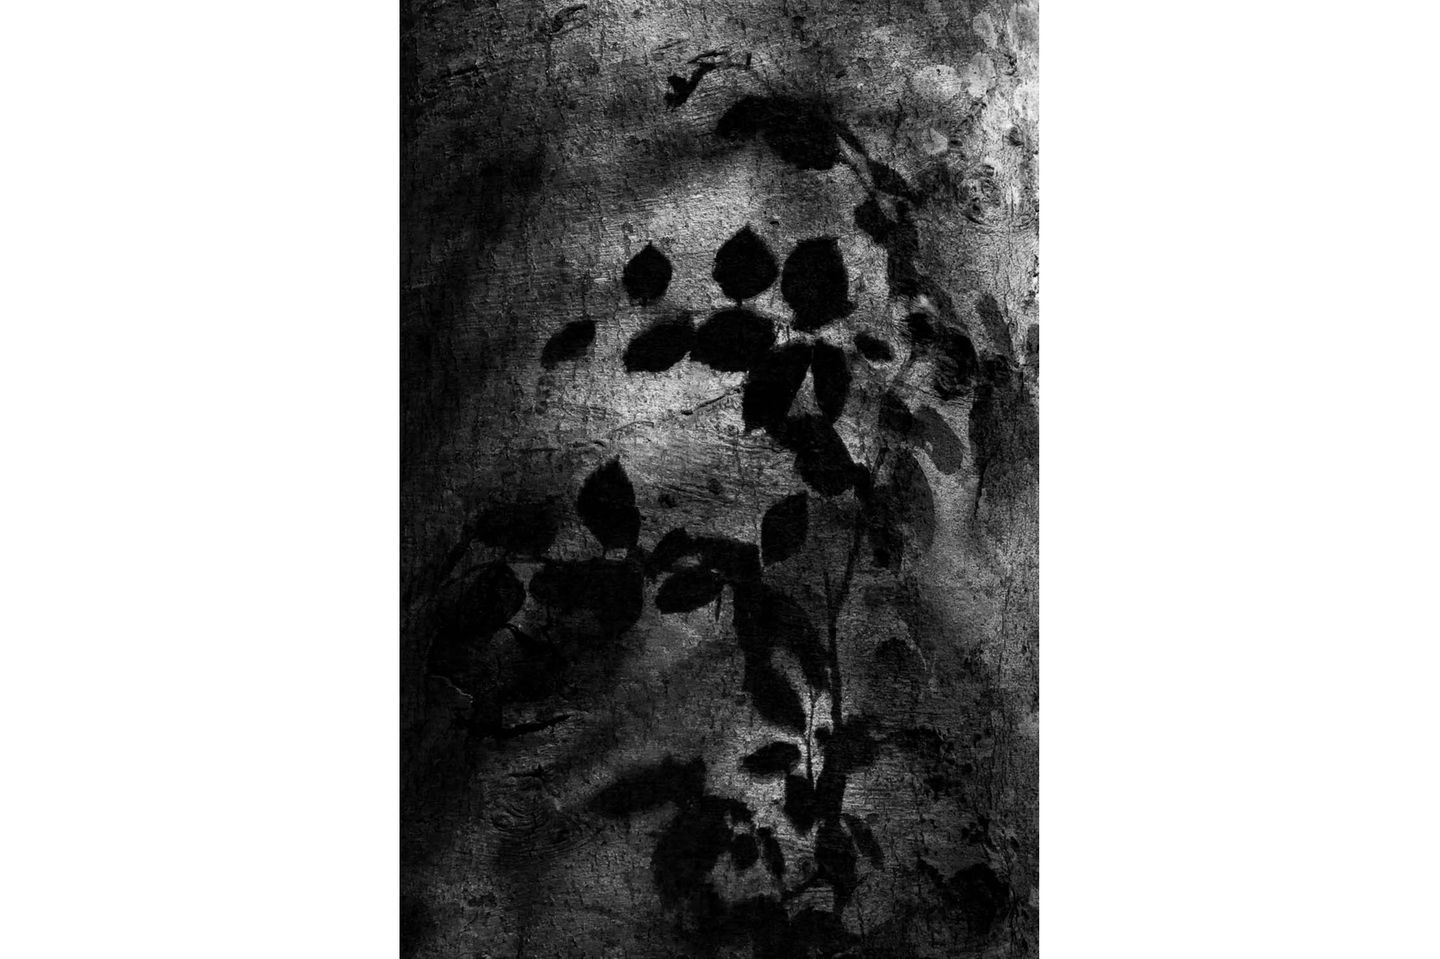 Diese in schwarzweiß umgesetzte Aufnahme von Immo Witgenfeld zeigt den Kreislauf des Lebens im Wald: Im Schatten der großen, alten Bäume wartet der junge Nachwuchs geduldig, bis ein alter Baum fällt und damit Platz für die nächste Generation macht. Sofort strecken sich dann die jungen Bäume dem Licht entgegen